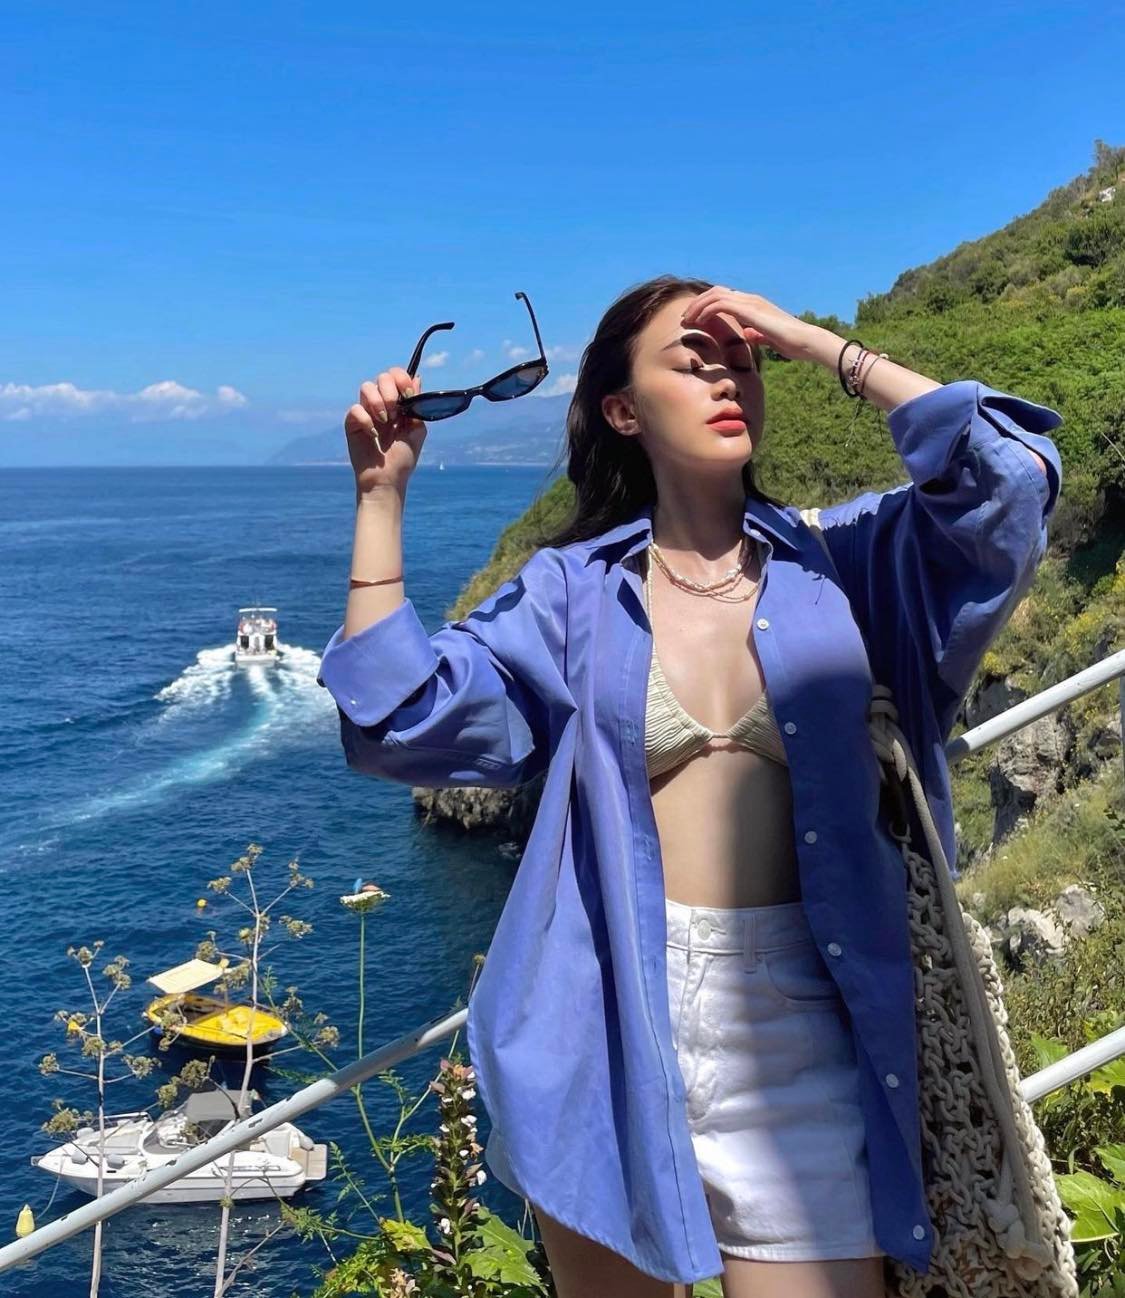 Hình ảnh diện bikini của Chichi trong chuyến đi nghỉ dưỡng ở Ý nhanh chóng nhận được nhiều lượt yêu thích trên mạng xã hội.